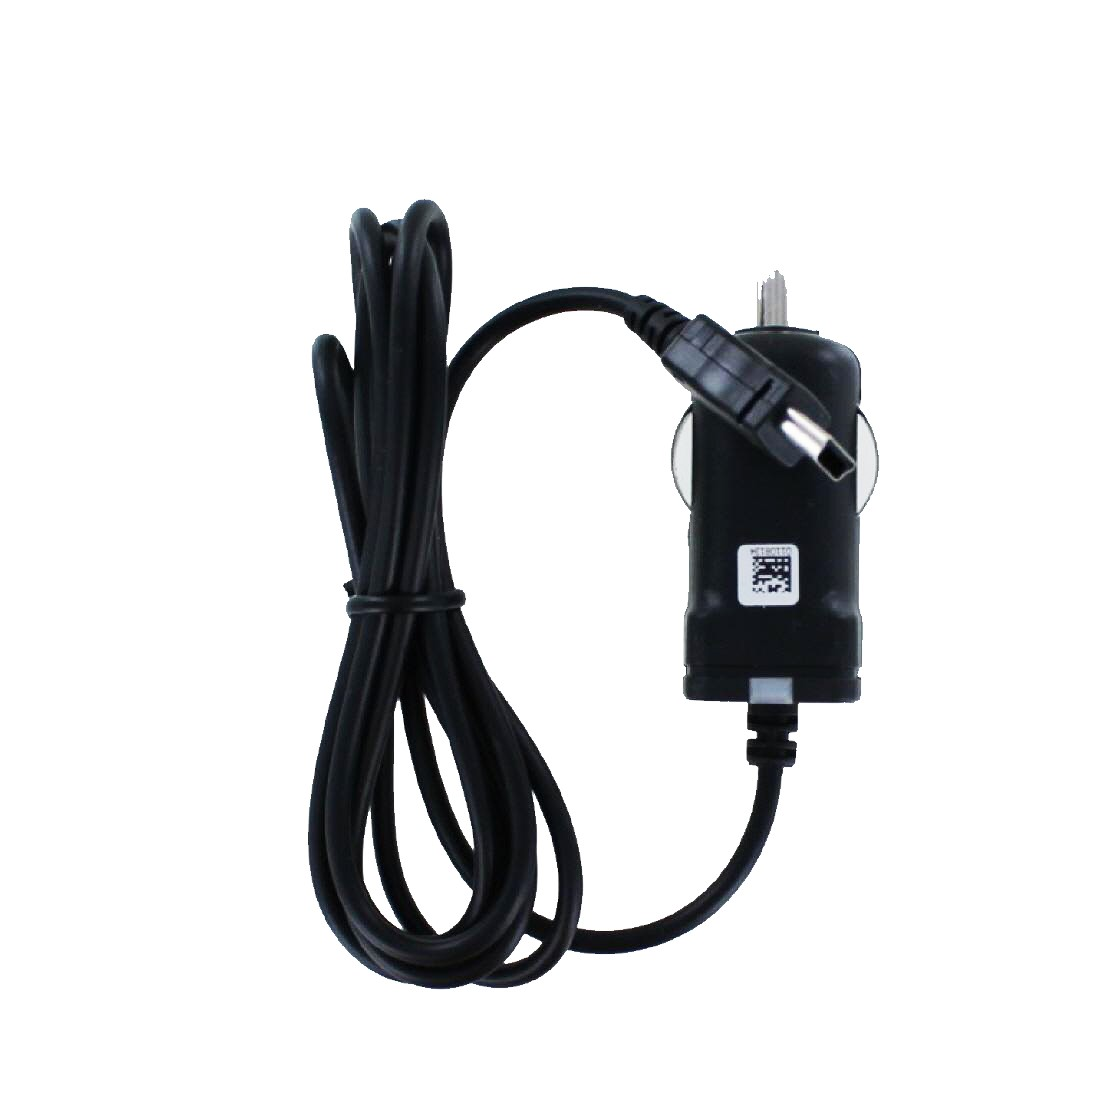 Garmin 2599LMT mit Ladekabel kompatibel MOBILOTEC 5 Volt, nüvi Garmin, Netzteil/Ladegerät schwarz